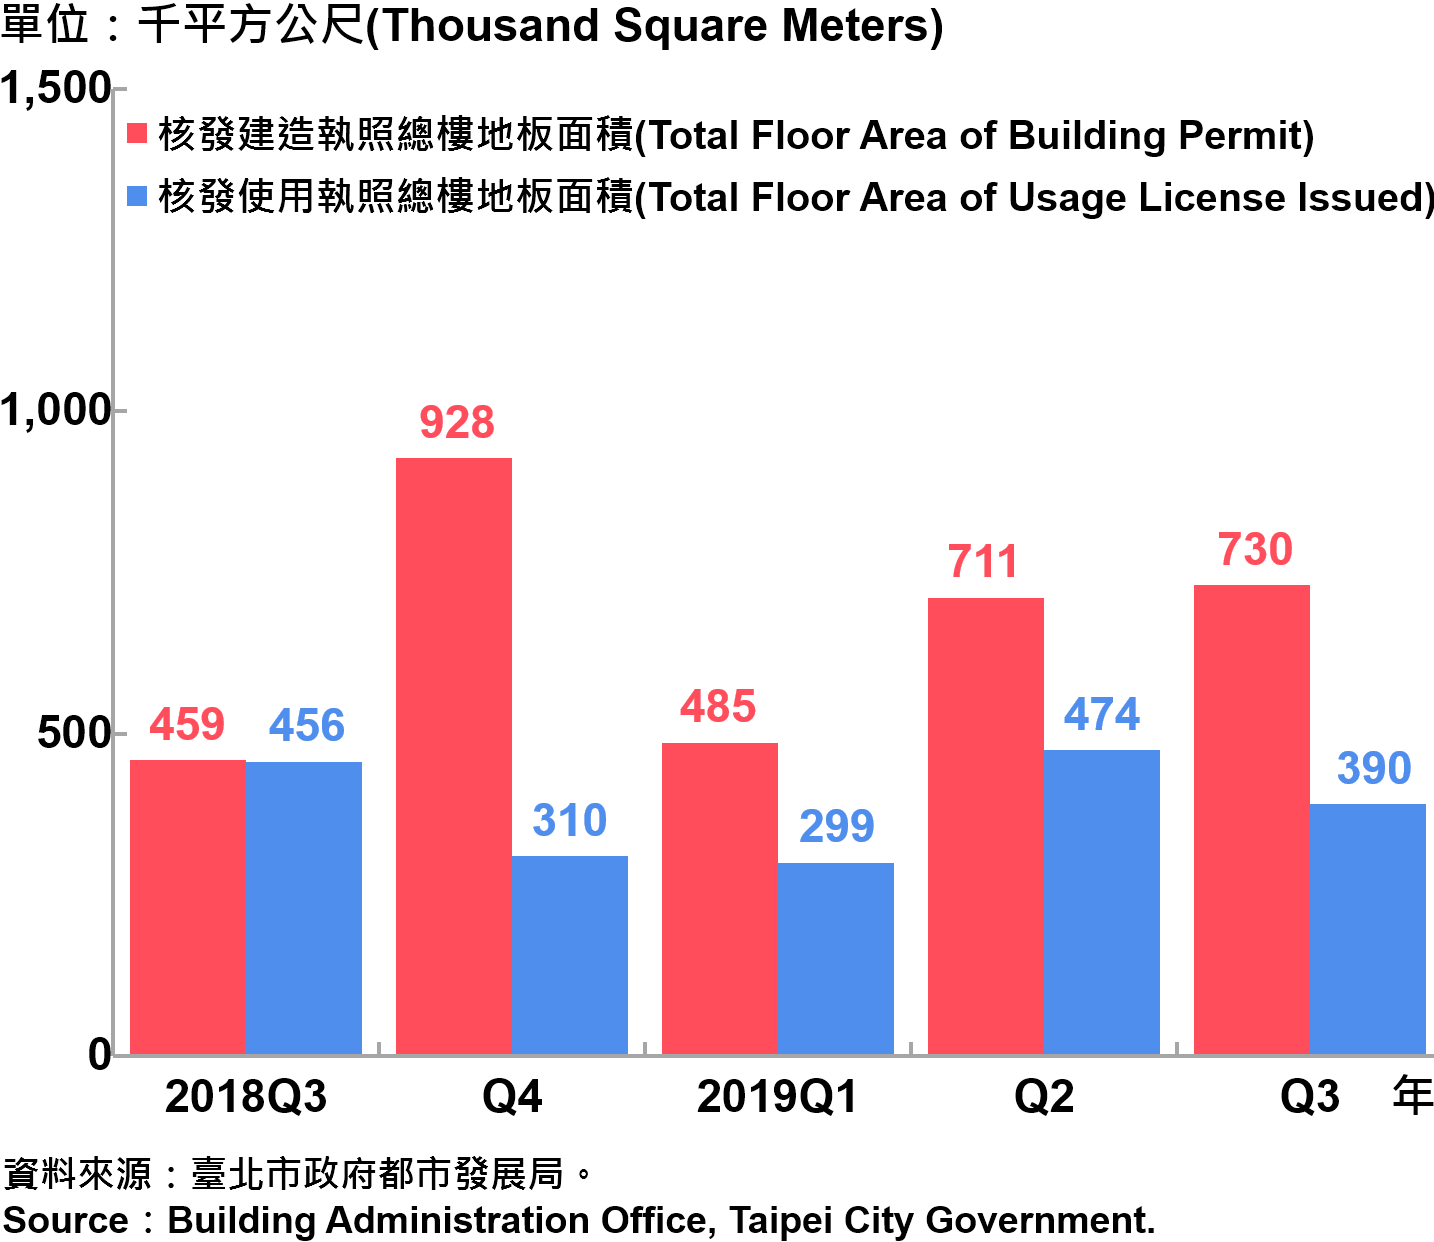 臺北市核發建築物執照與使用執照總樓地板面積—2019Q3 Total Floor Area of Building Permit and Usage License Issued in Taipei City—2019Q3